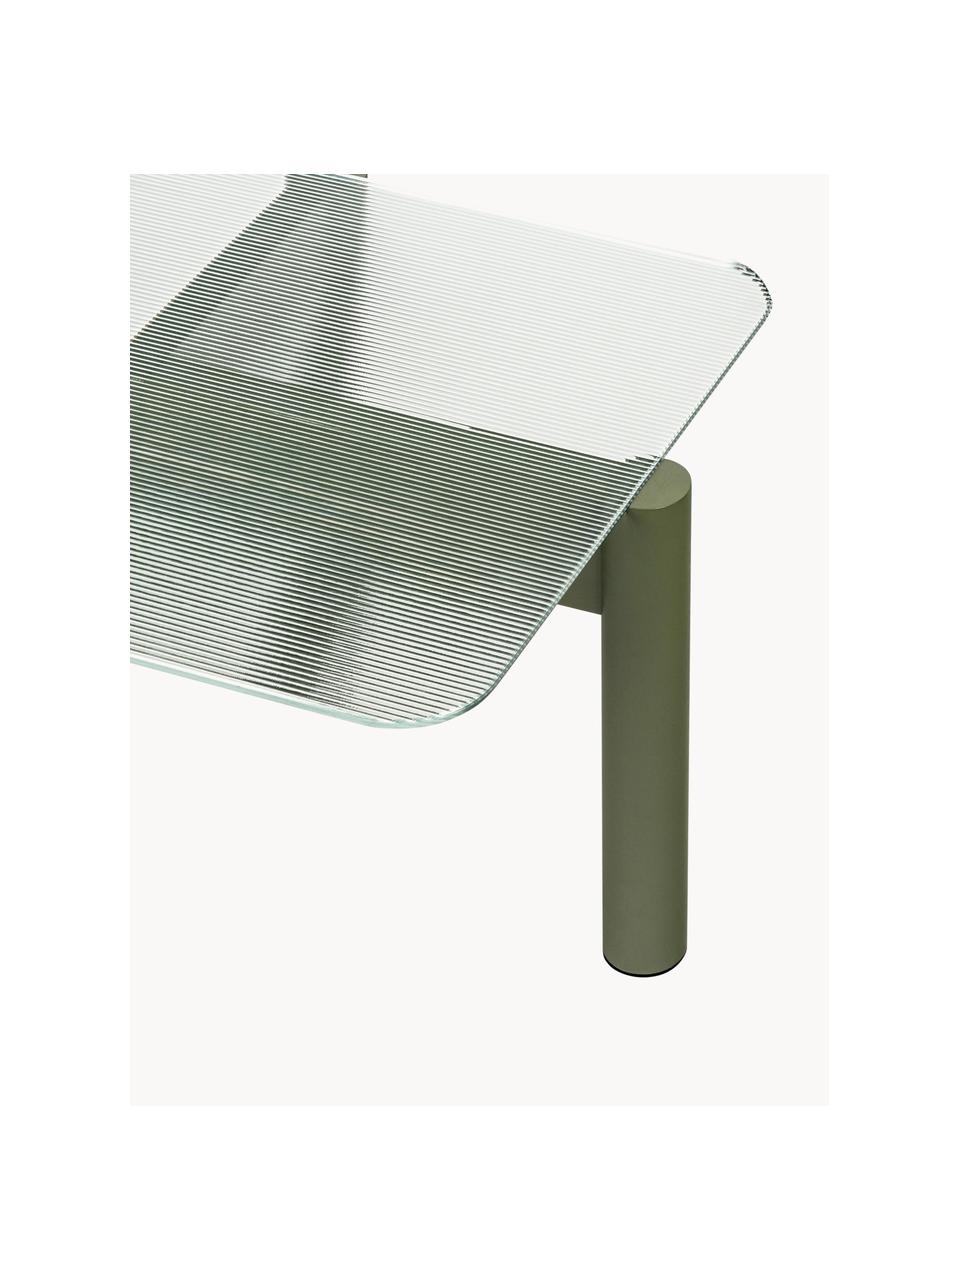 Couchtisch Kob aus Buchenholz mit Glasplatte, Tischplatte: Glas, Beine: Buchenholz, massiv, Transparent, Olivgrün, B 110 x T 41 cm